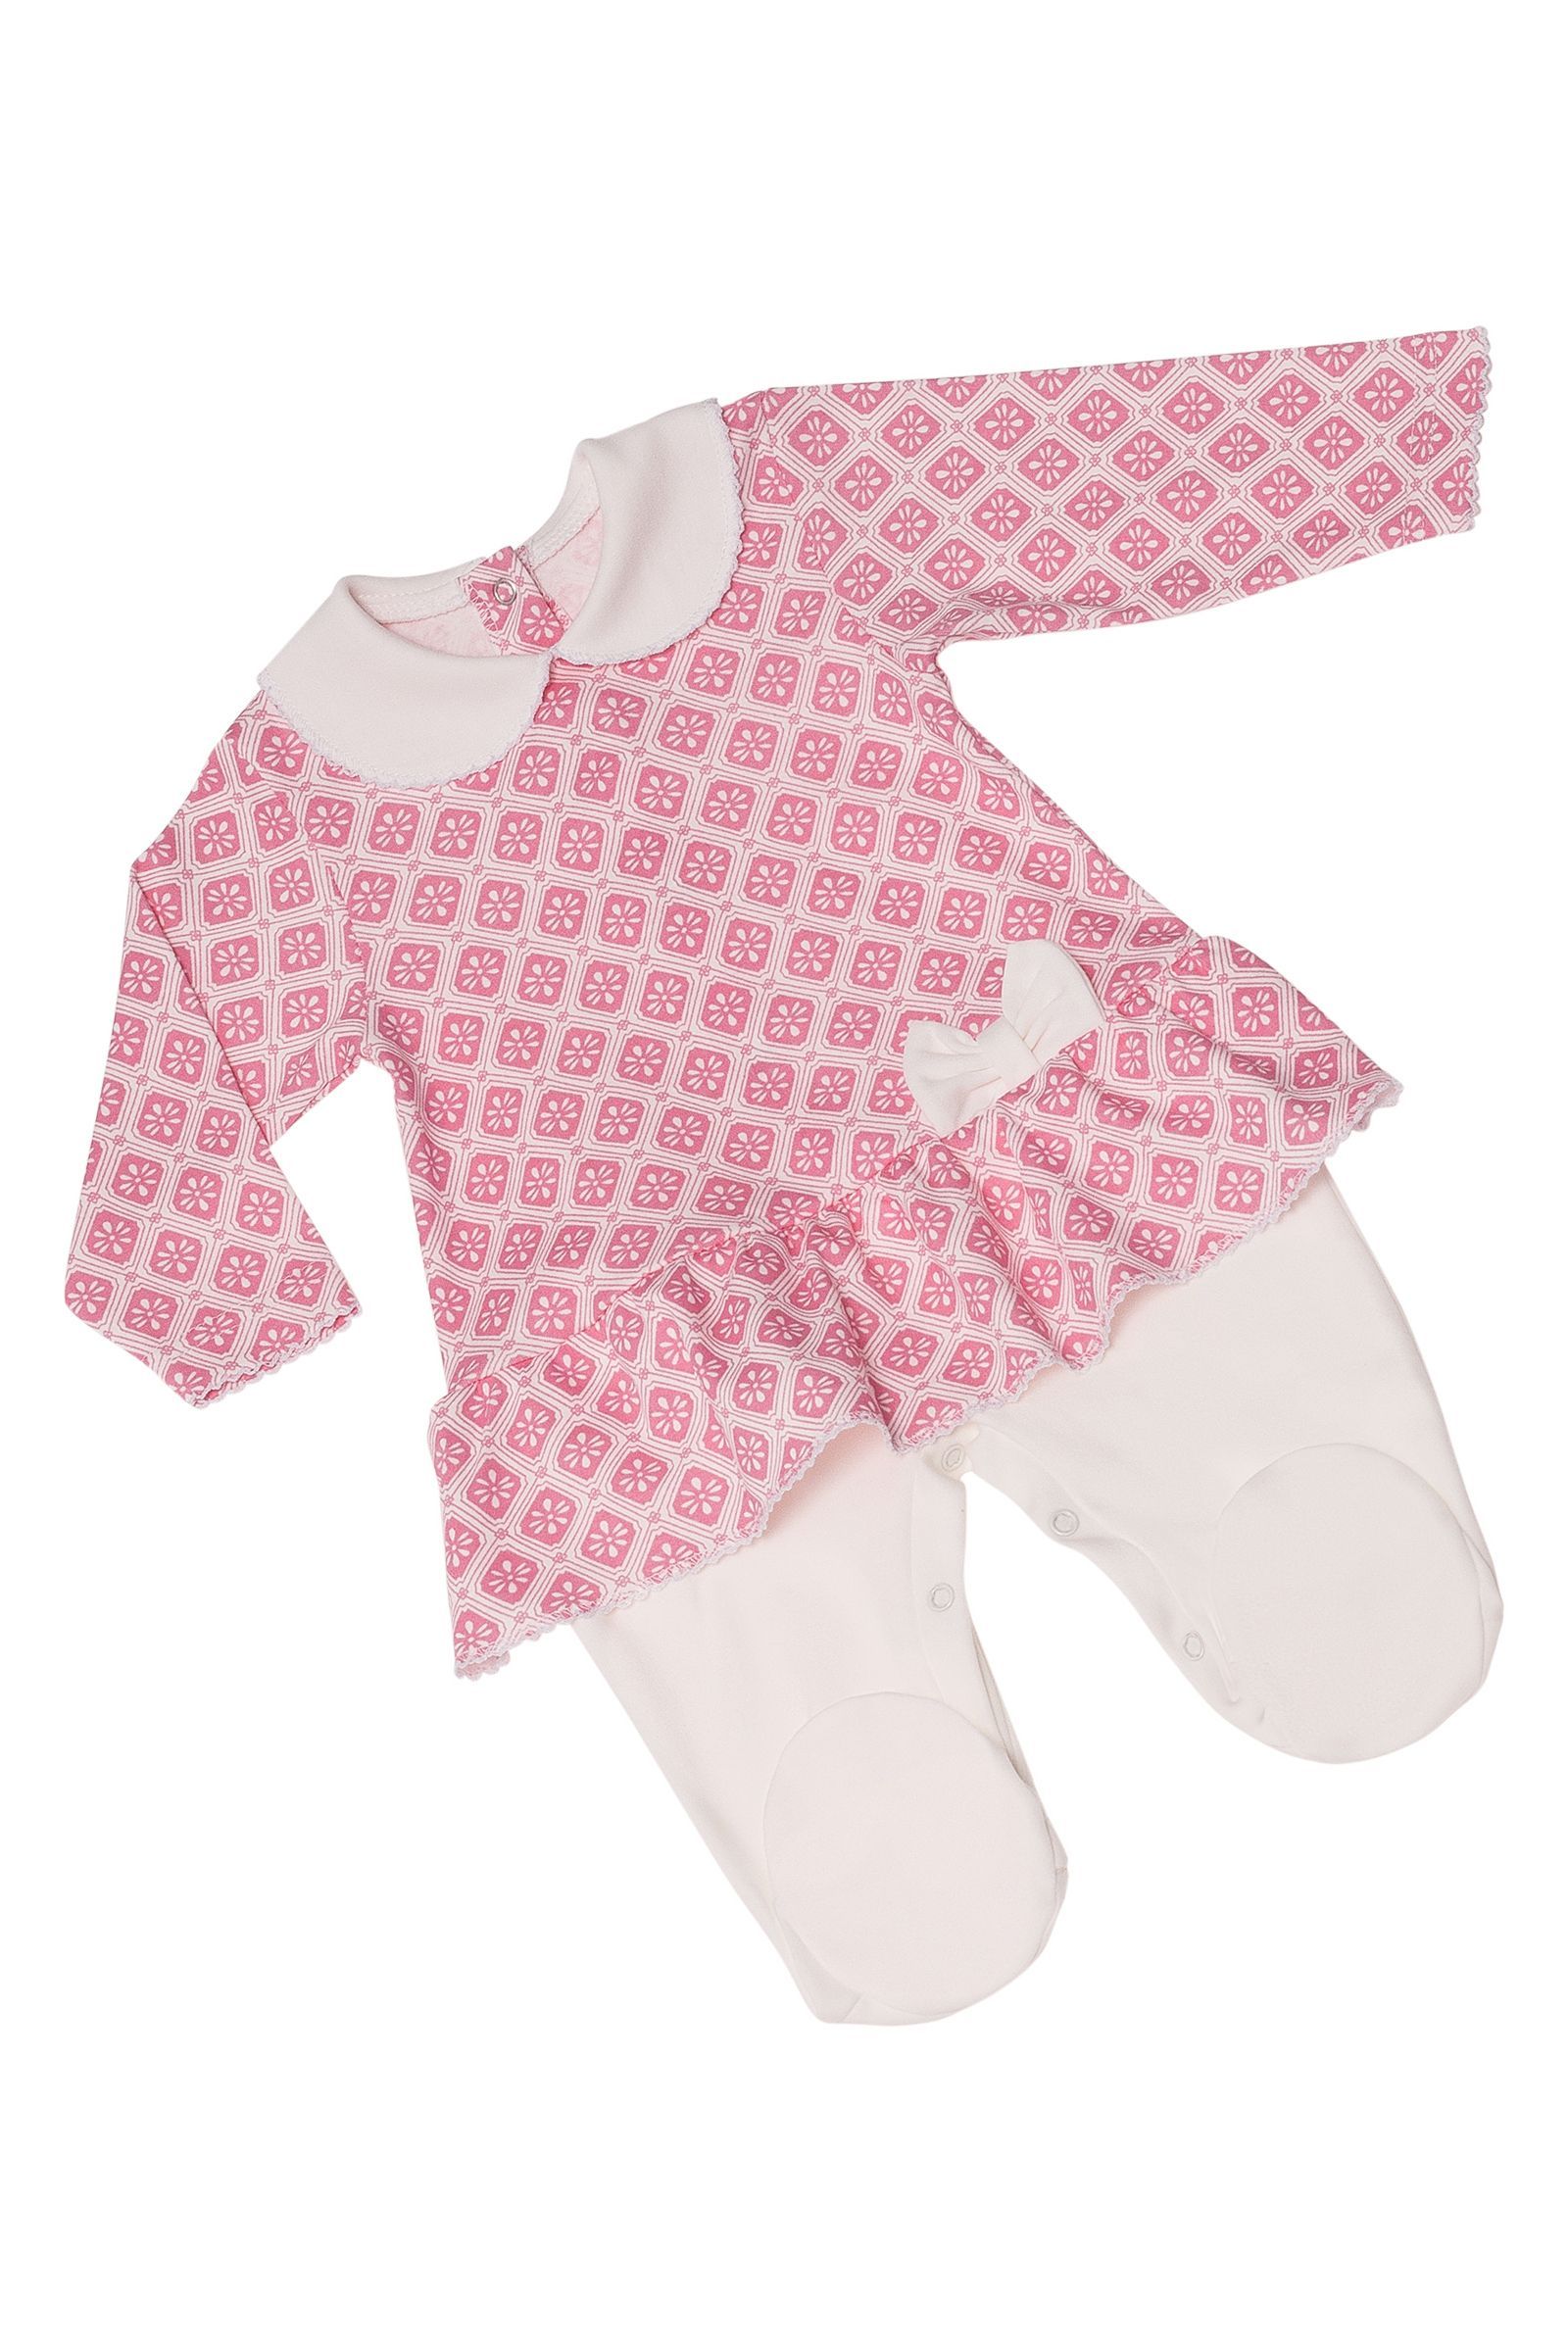 Комбинезон-КБ01-2172 оптом от производителя детской одежды 'Алёна'